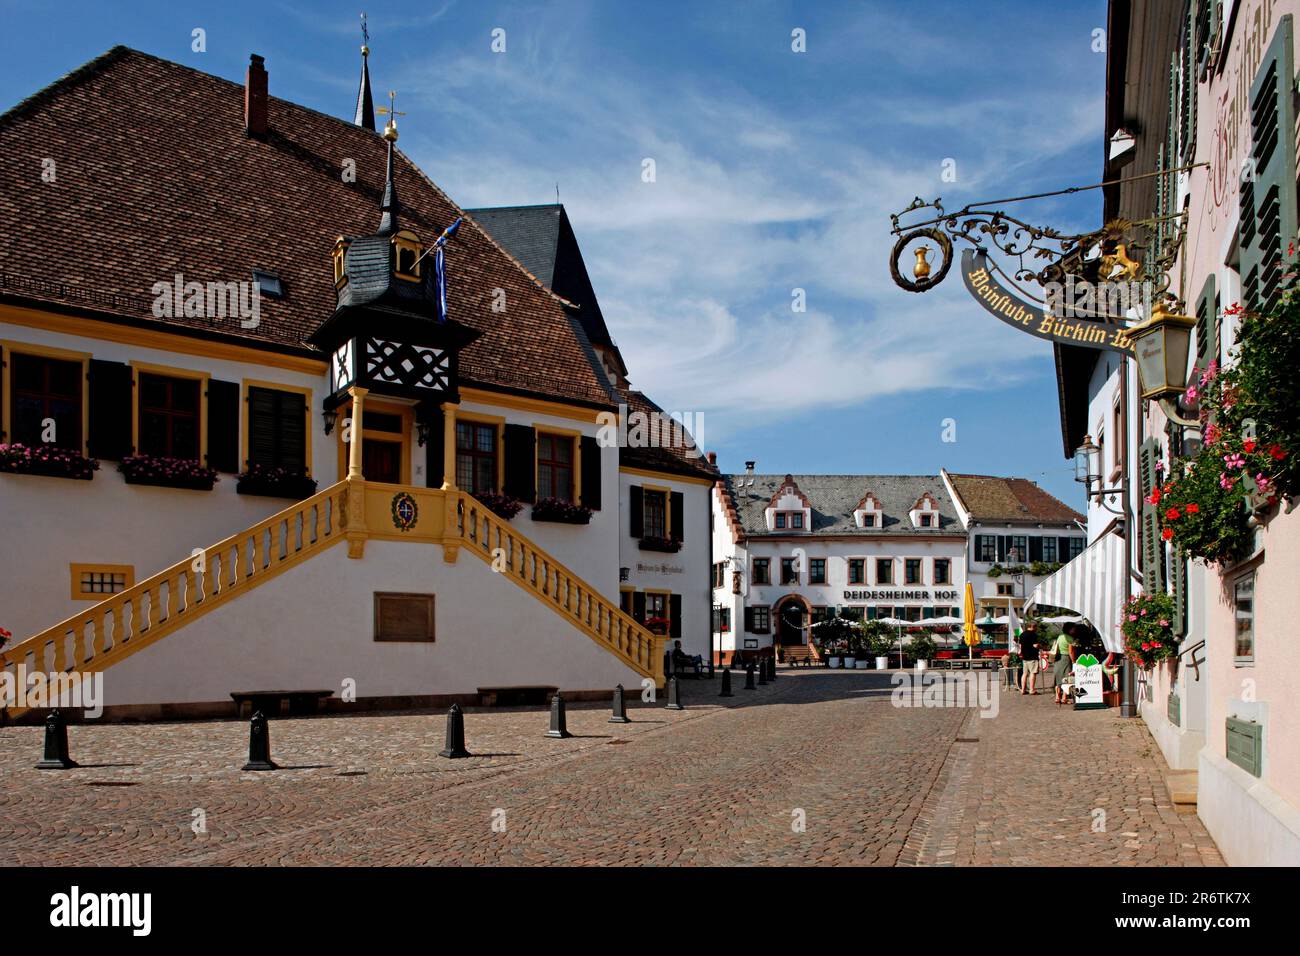 Town Hall, Deidesheim an der Weinstrasse, Rhineland-Palatinate, Hotel Deidesheimer Hof, Germany Stock Photo